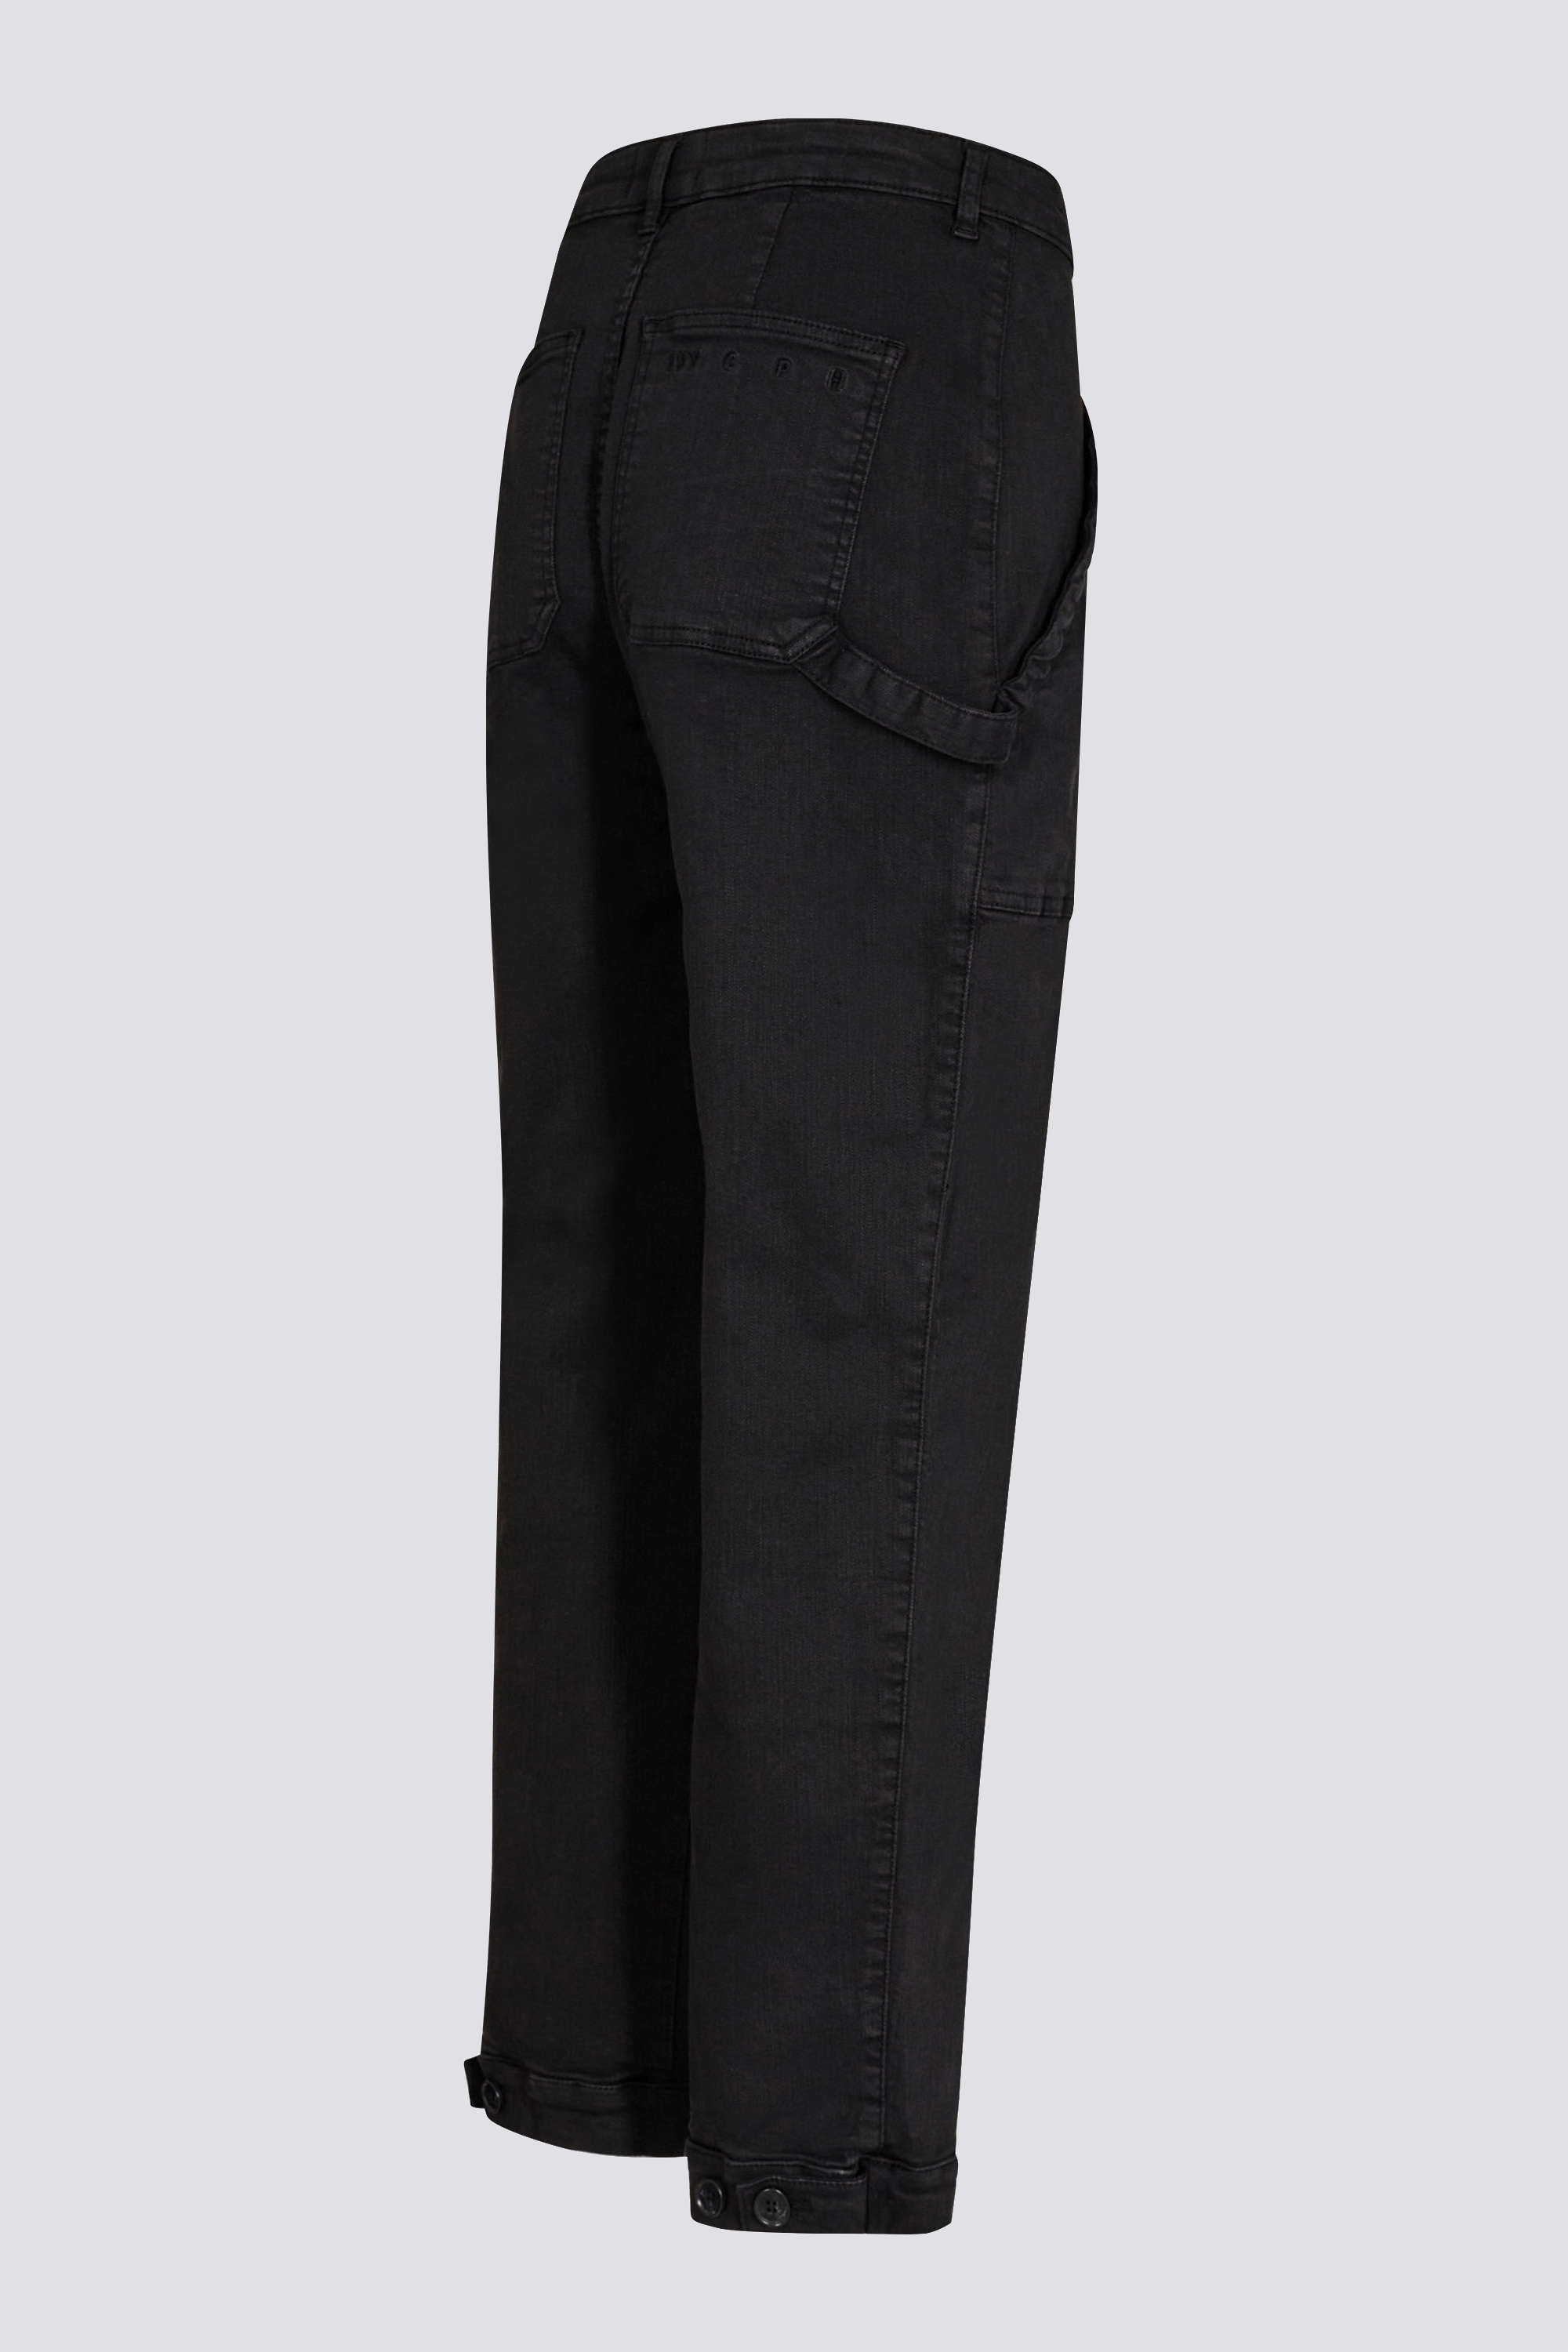 Nostrum dark brown cargo jeans - G3-MJE4723 | G3fashion.com